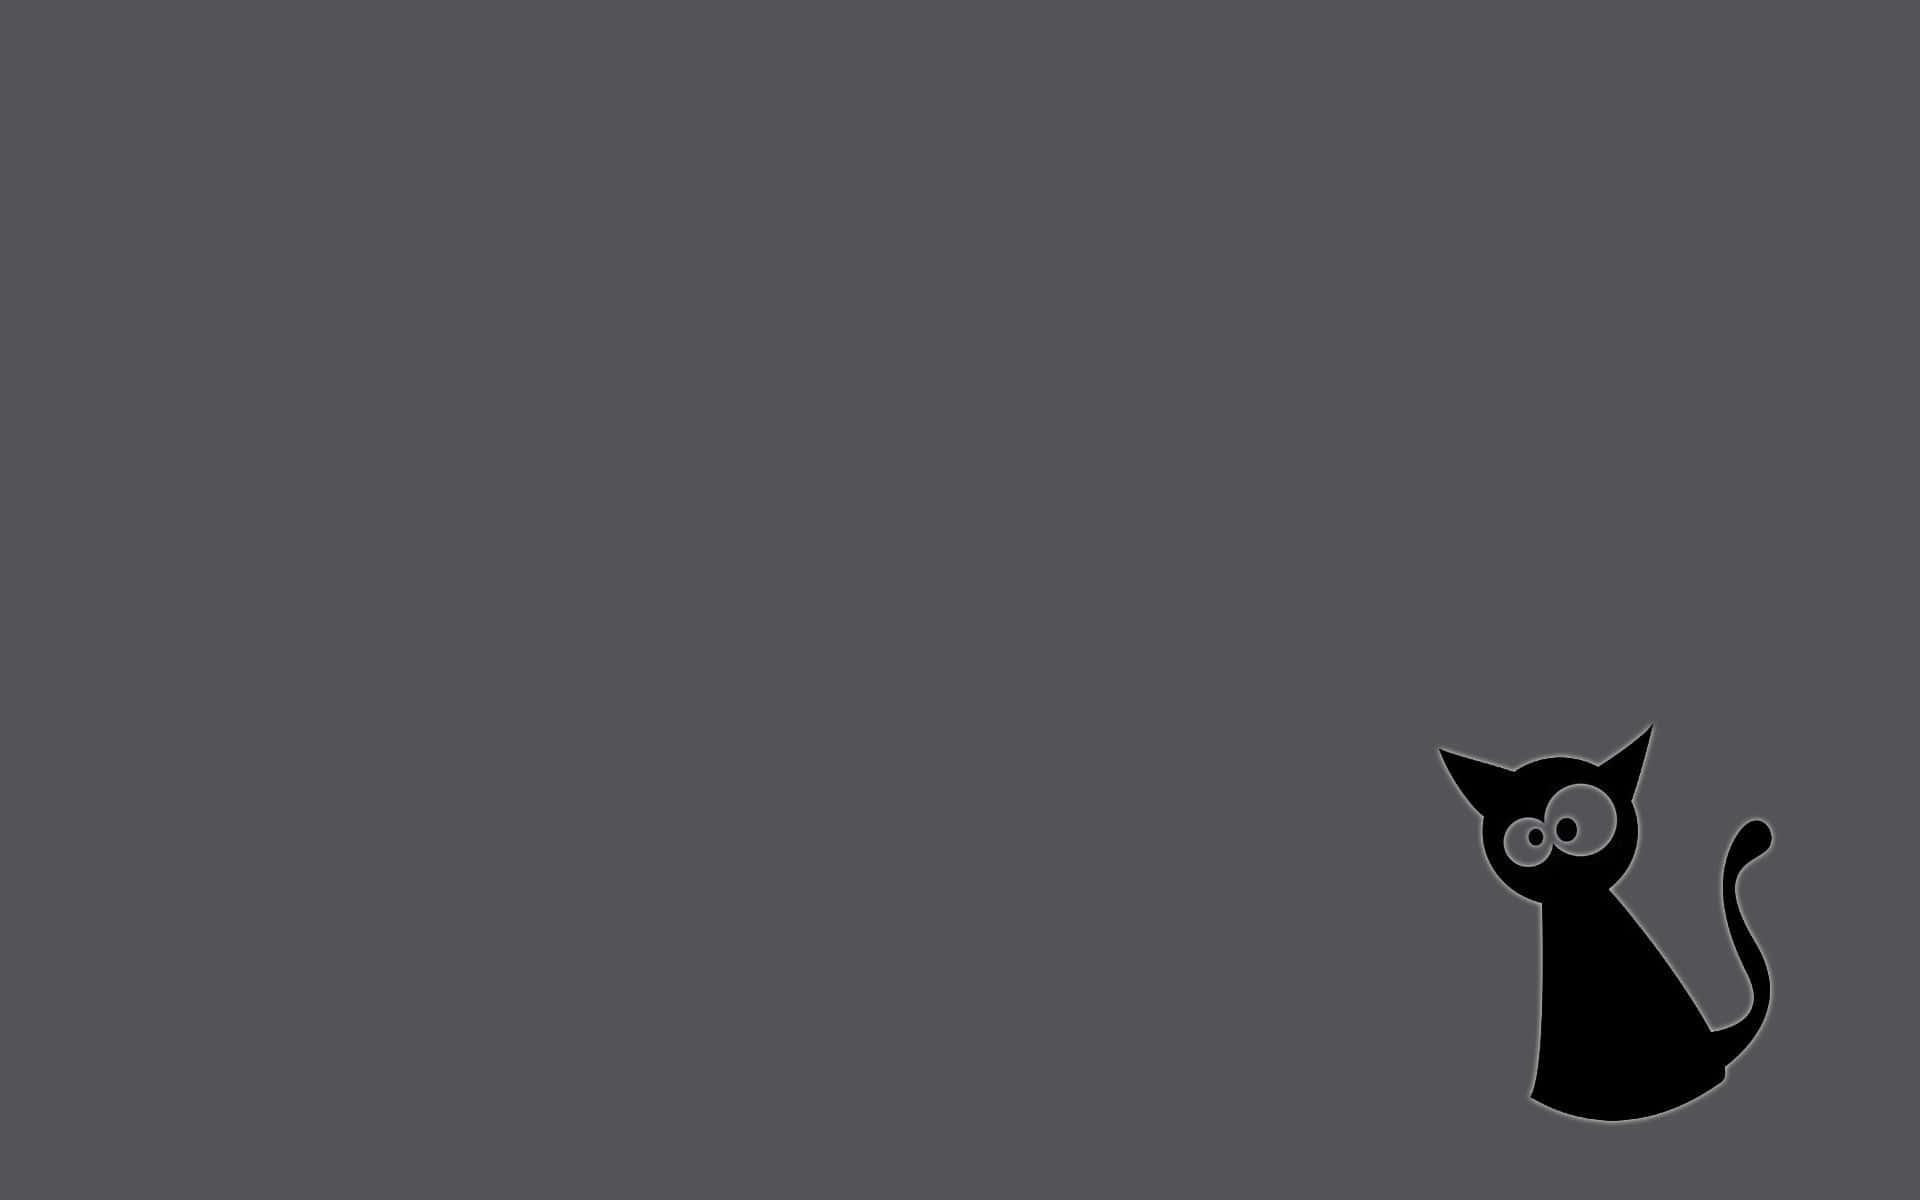 Eineschwarze Katze Sitzt Auf Einem Grauen Hintergrund.